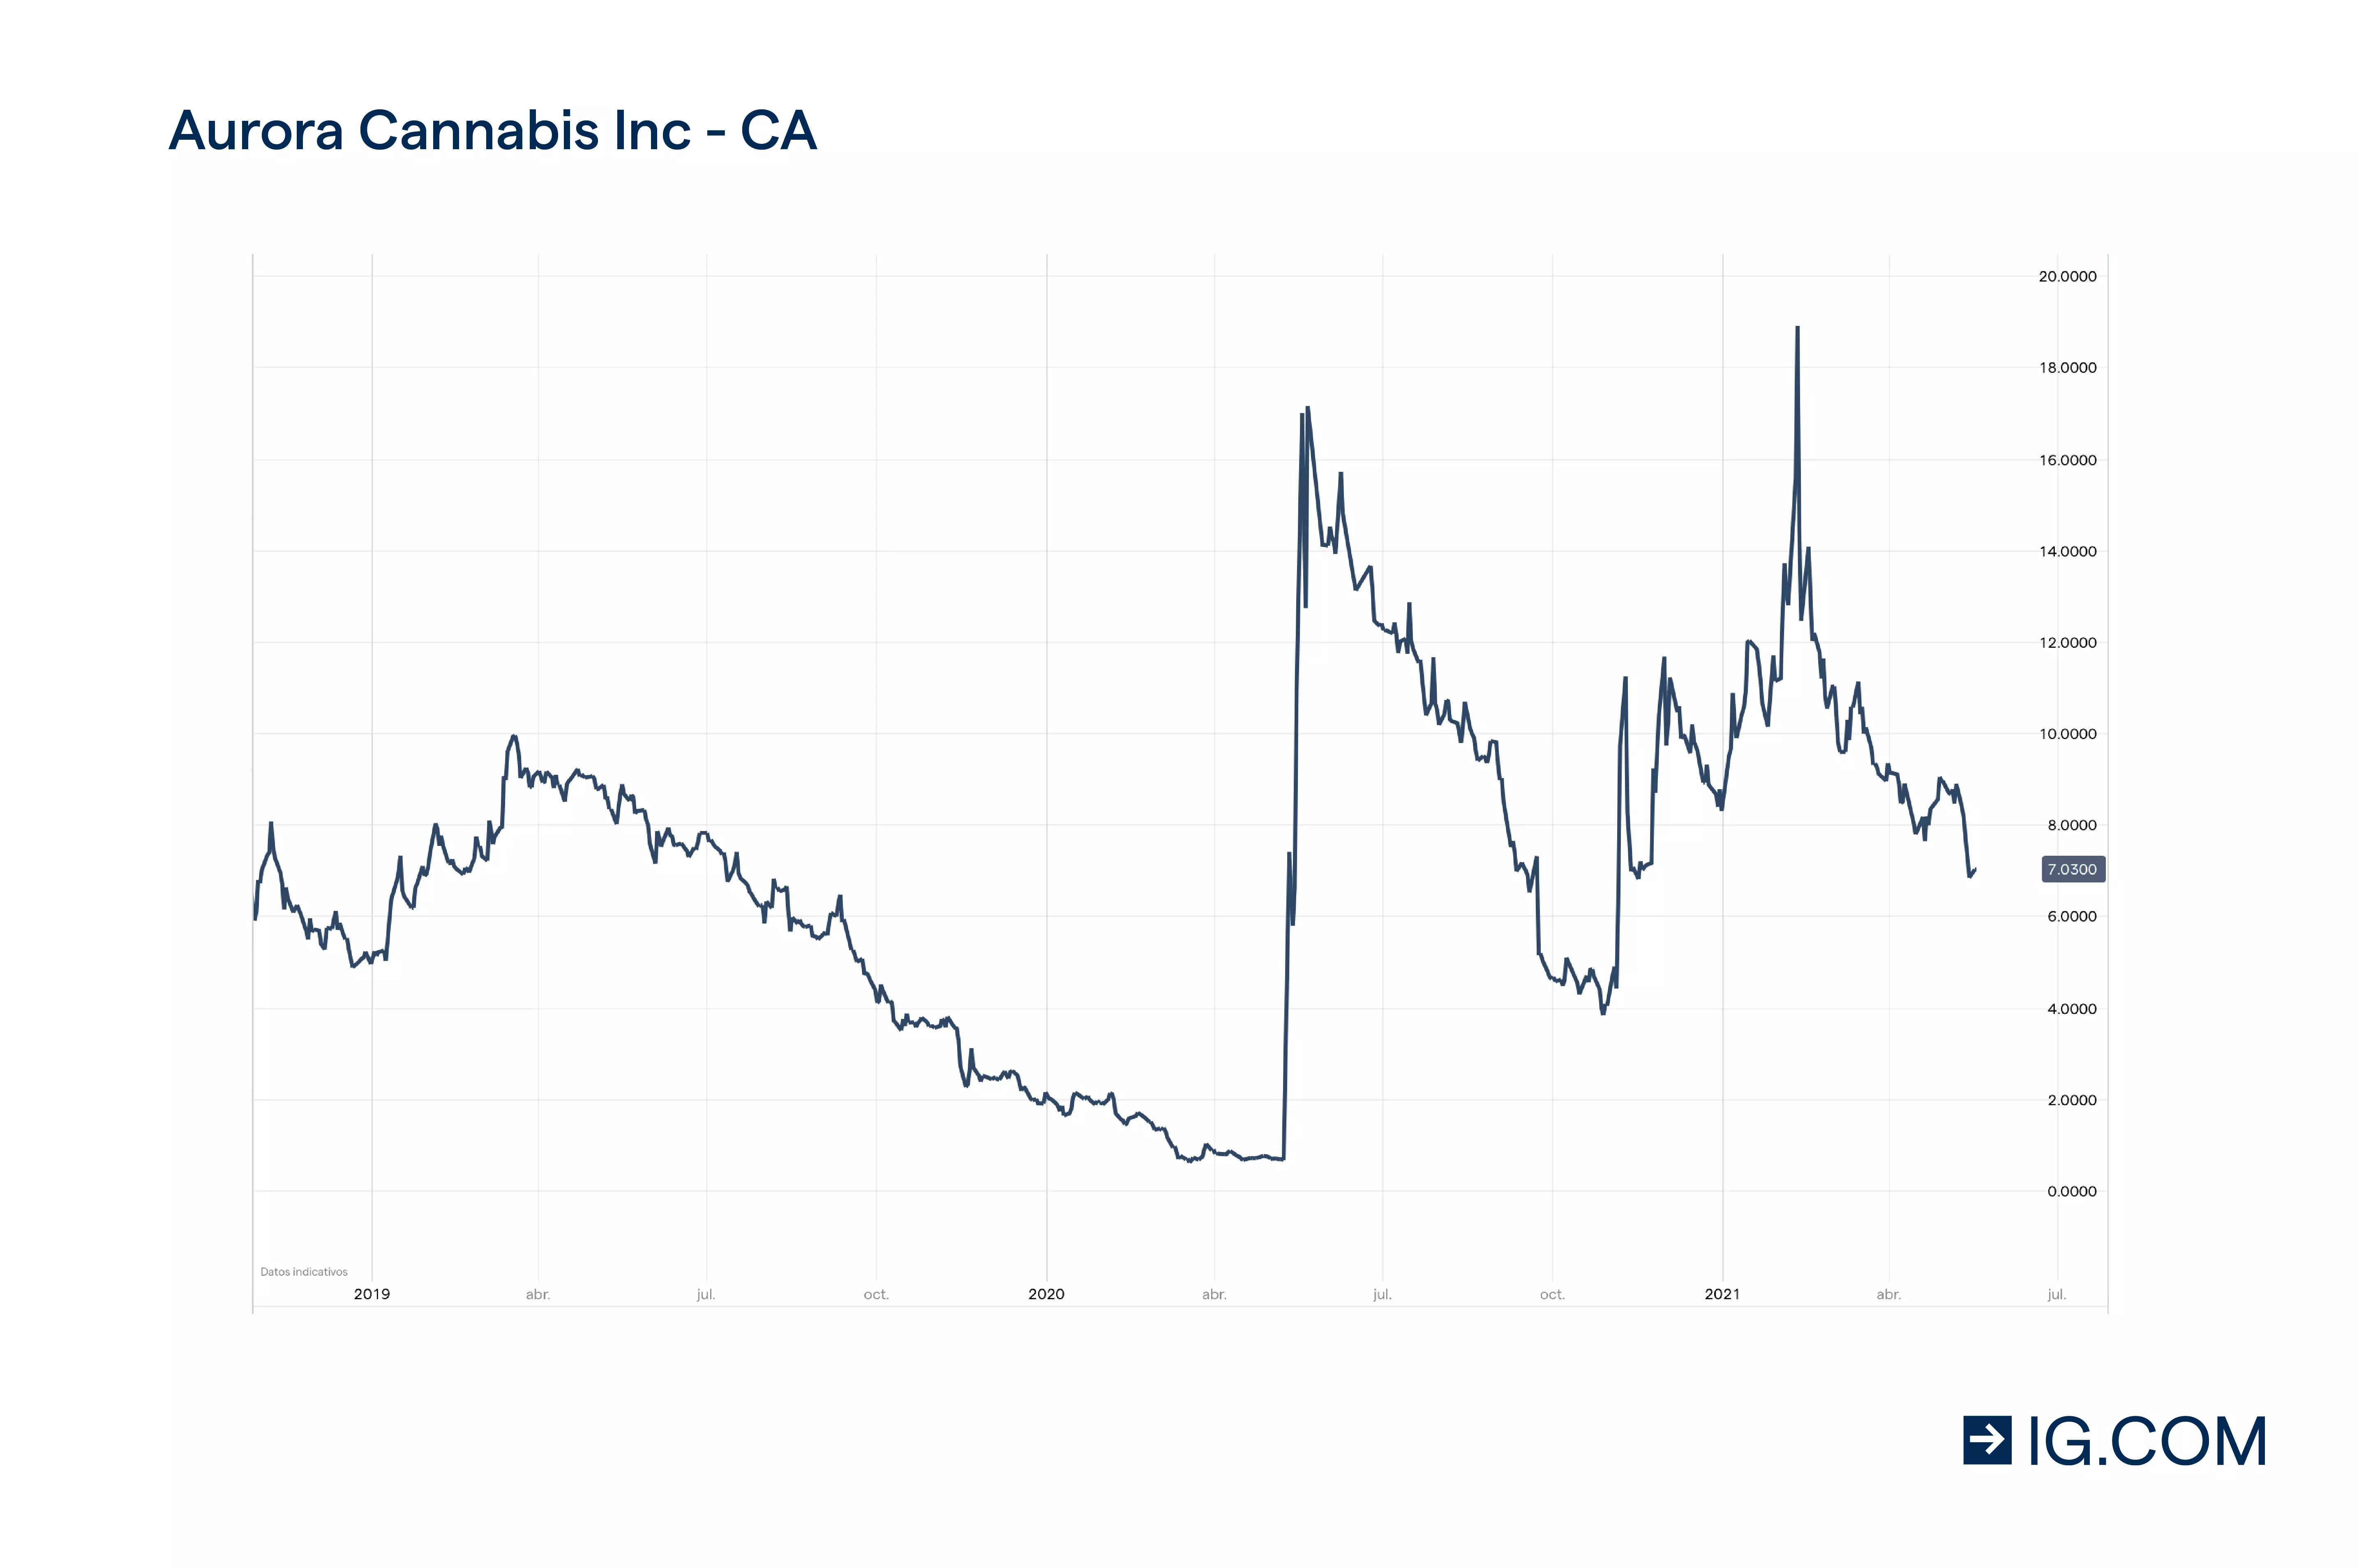 Gráfico de precios acciones Aurora Cannabis